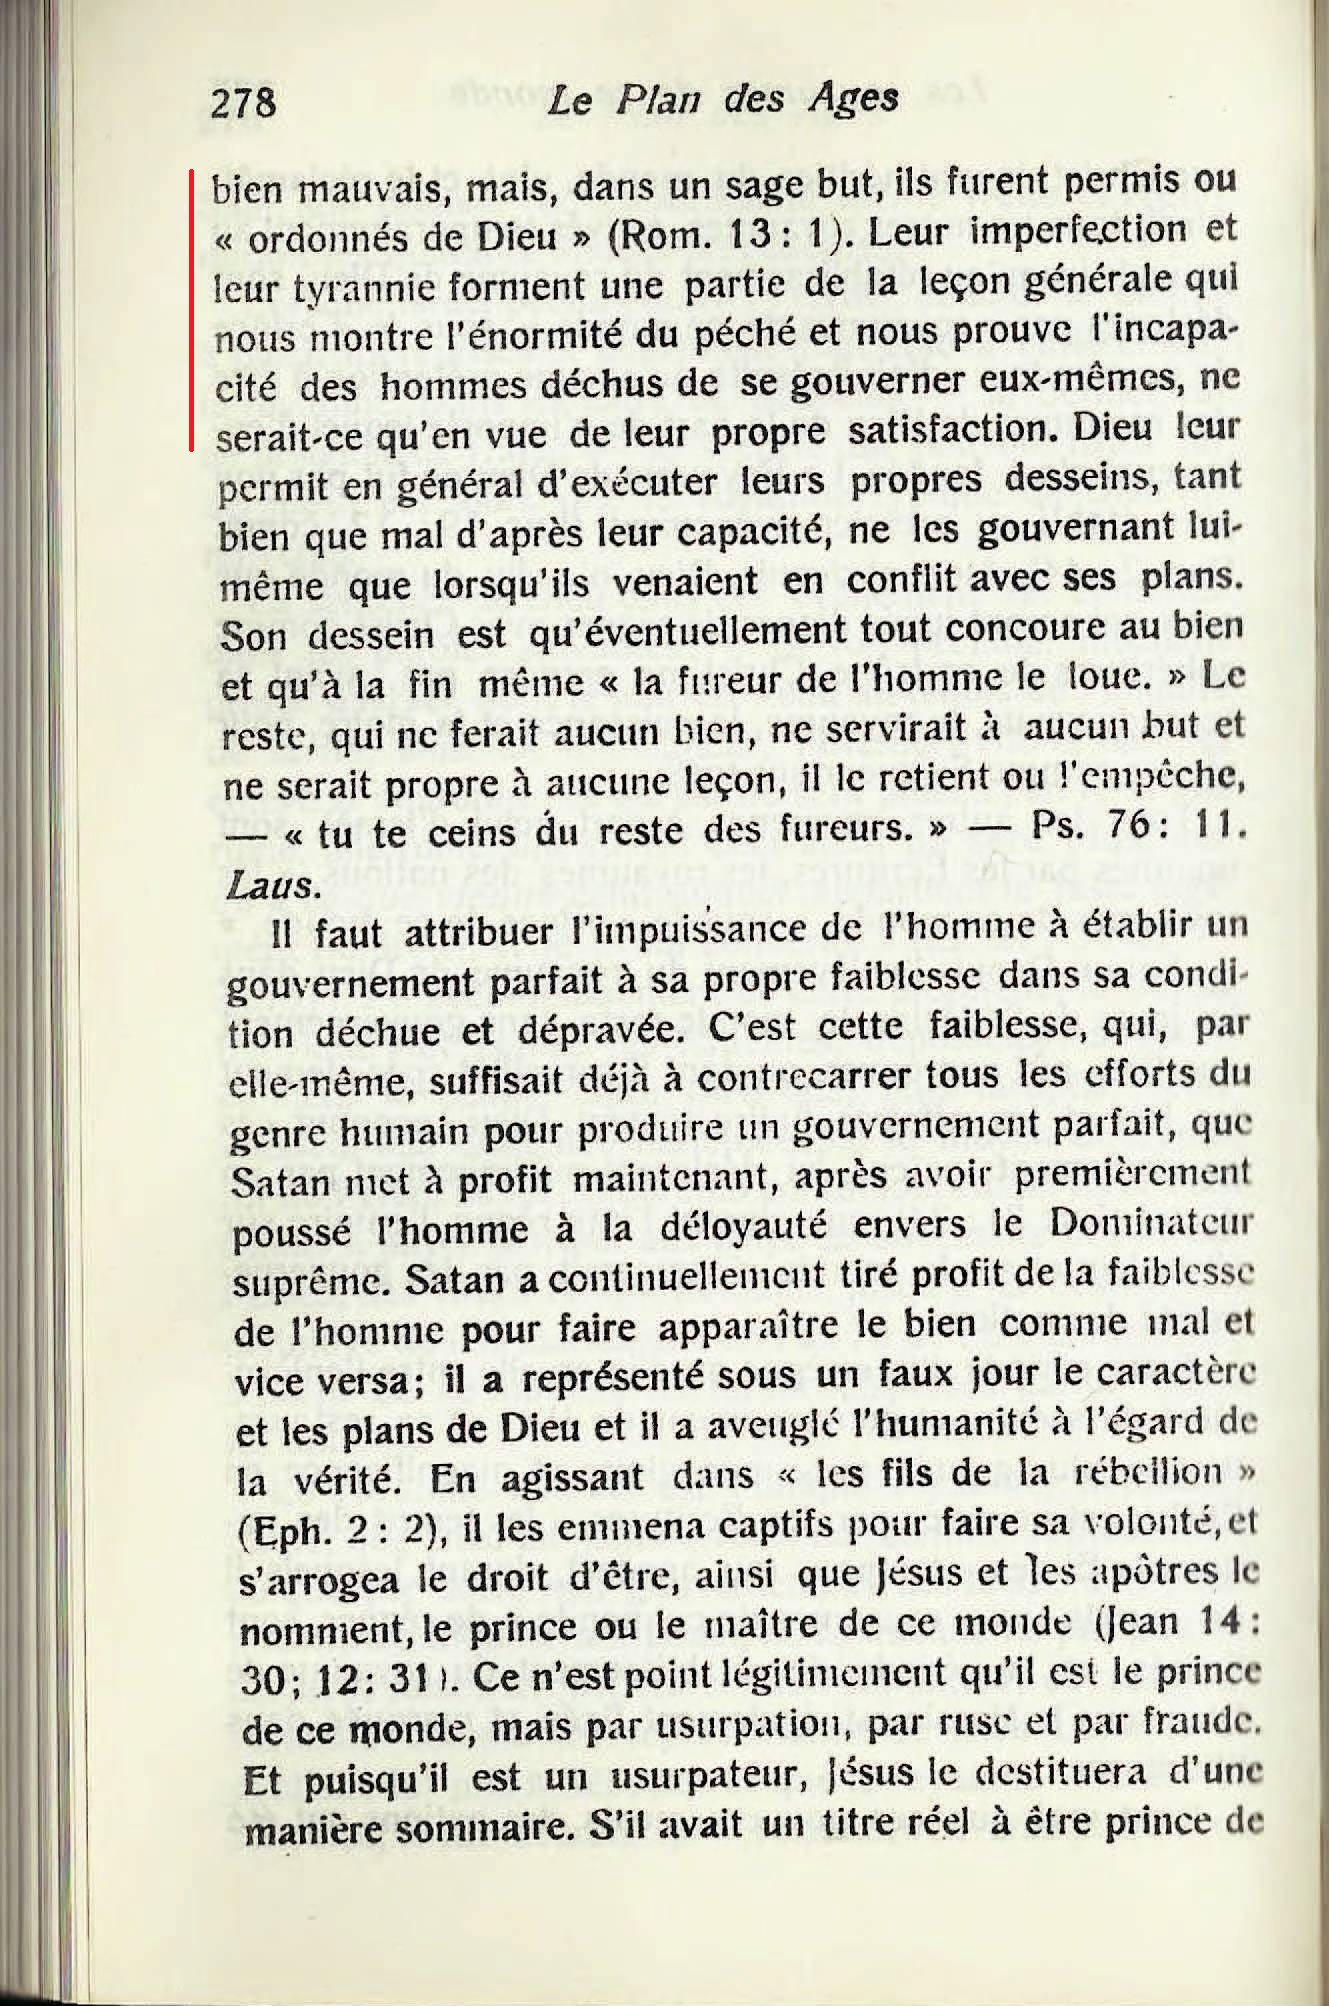 Les autorités supérieures  - Page 2 1886_Etudes_dans_les_Ecritures_Vol1_Le_Divin_Plan_Des_Ages(scan)-p278